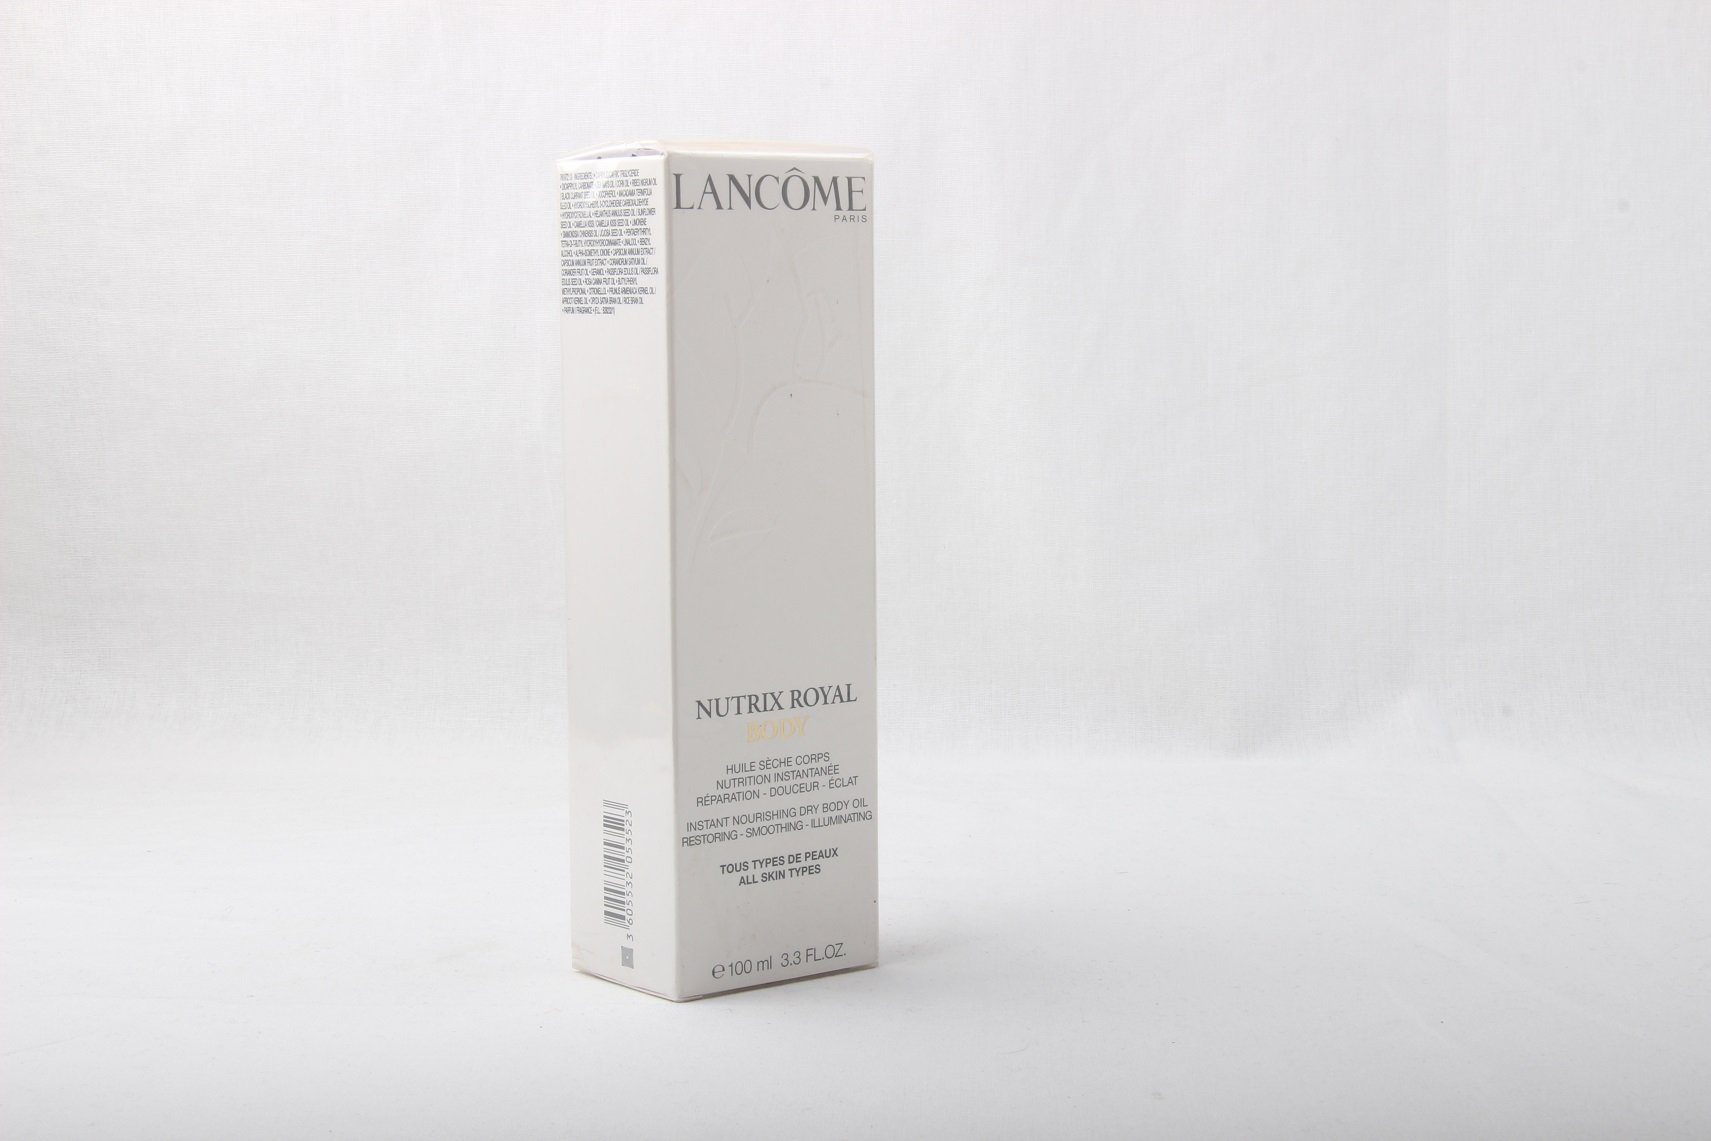 Skin Oil Körperöl Body Lancome All Types 100ml LANCOME Nutrix Royal